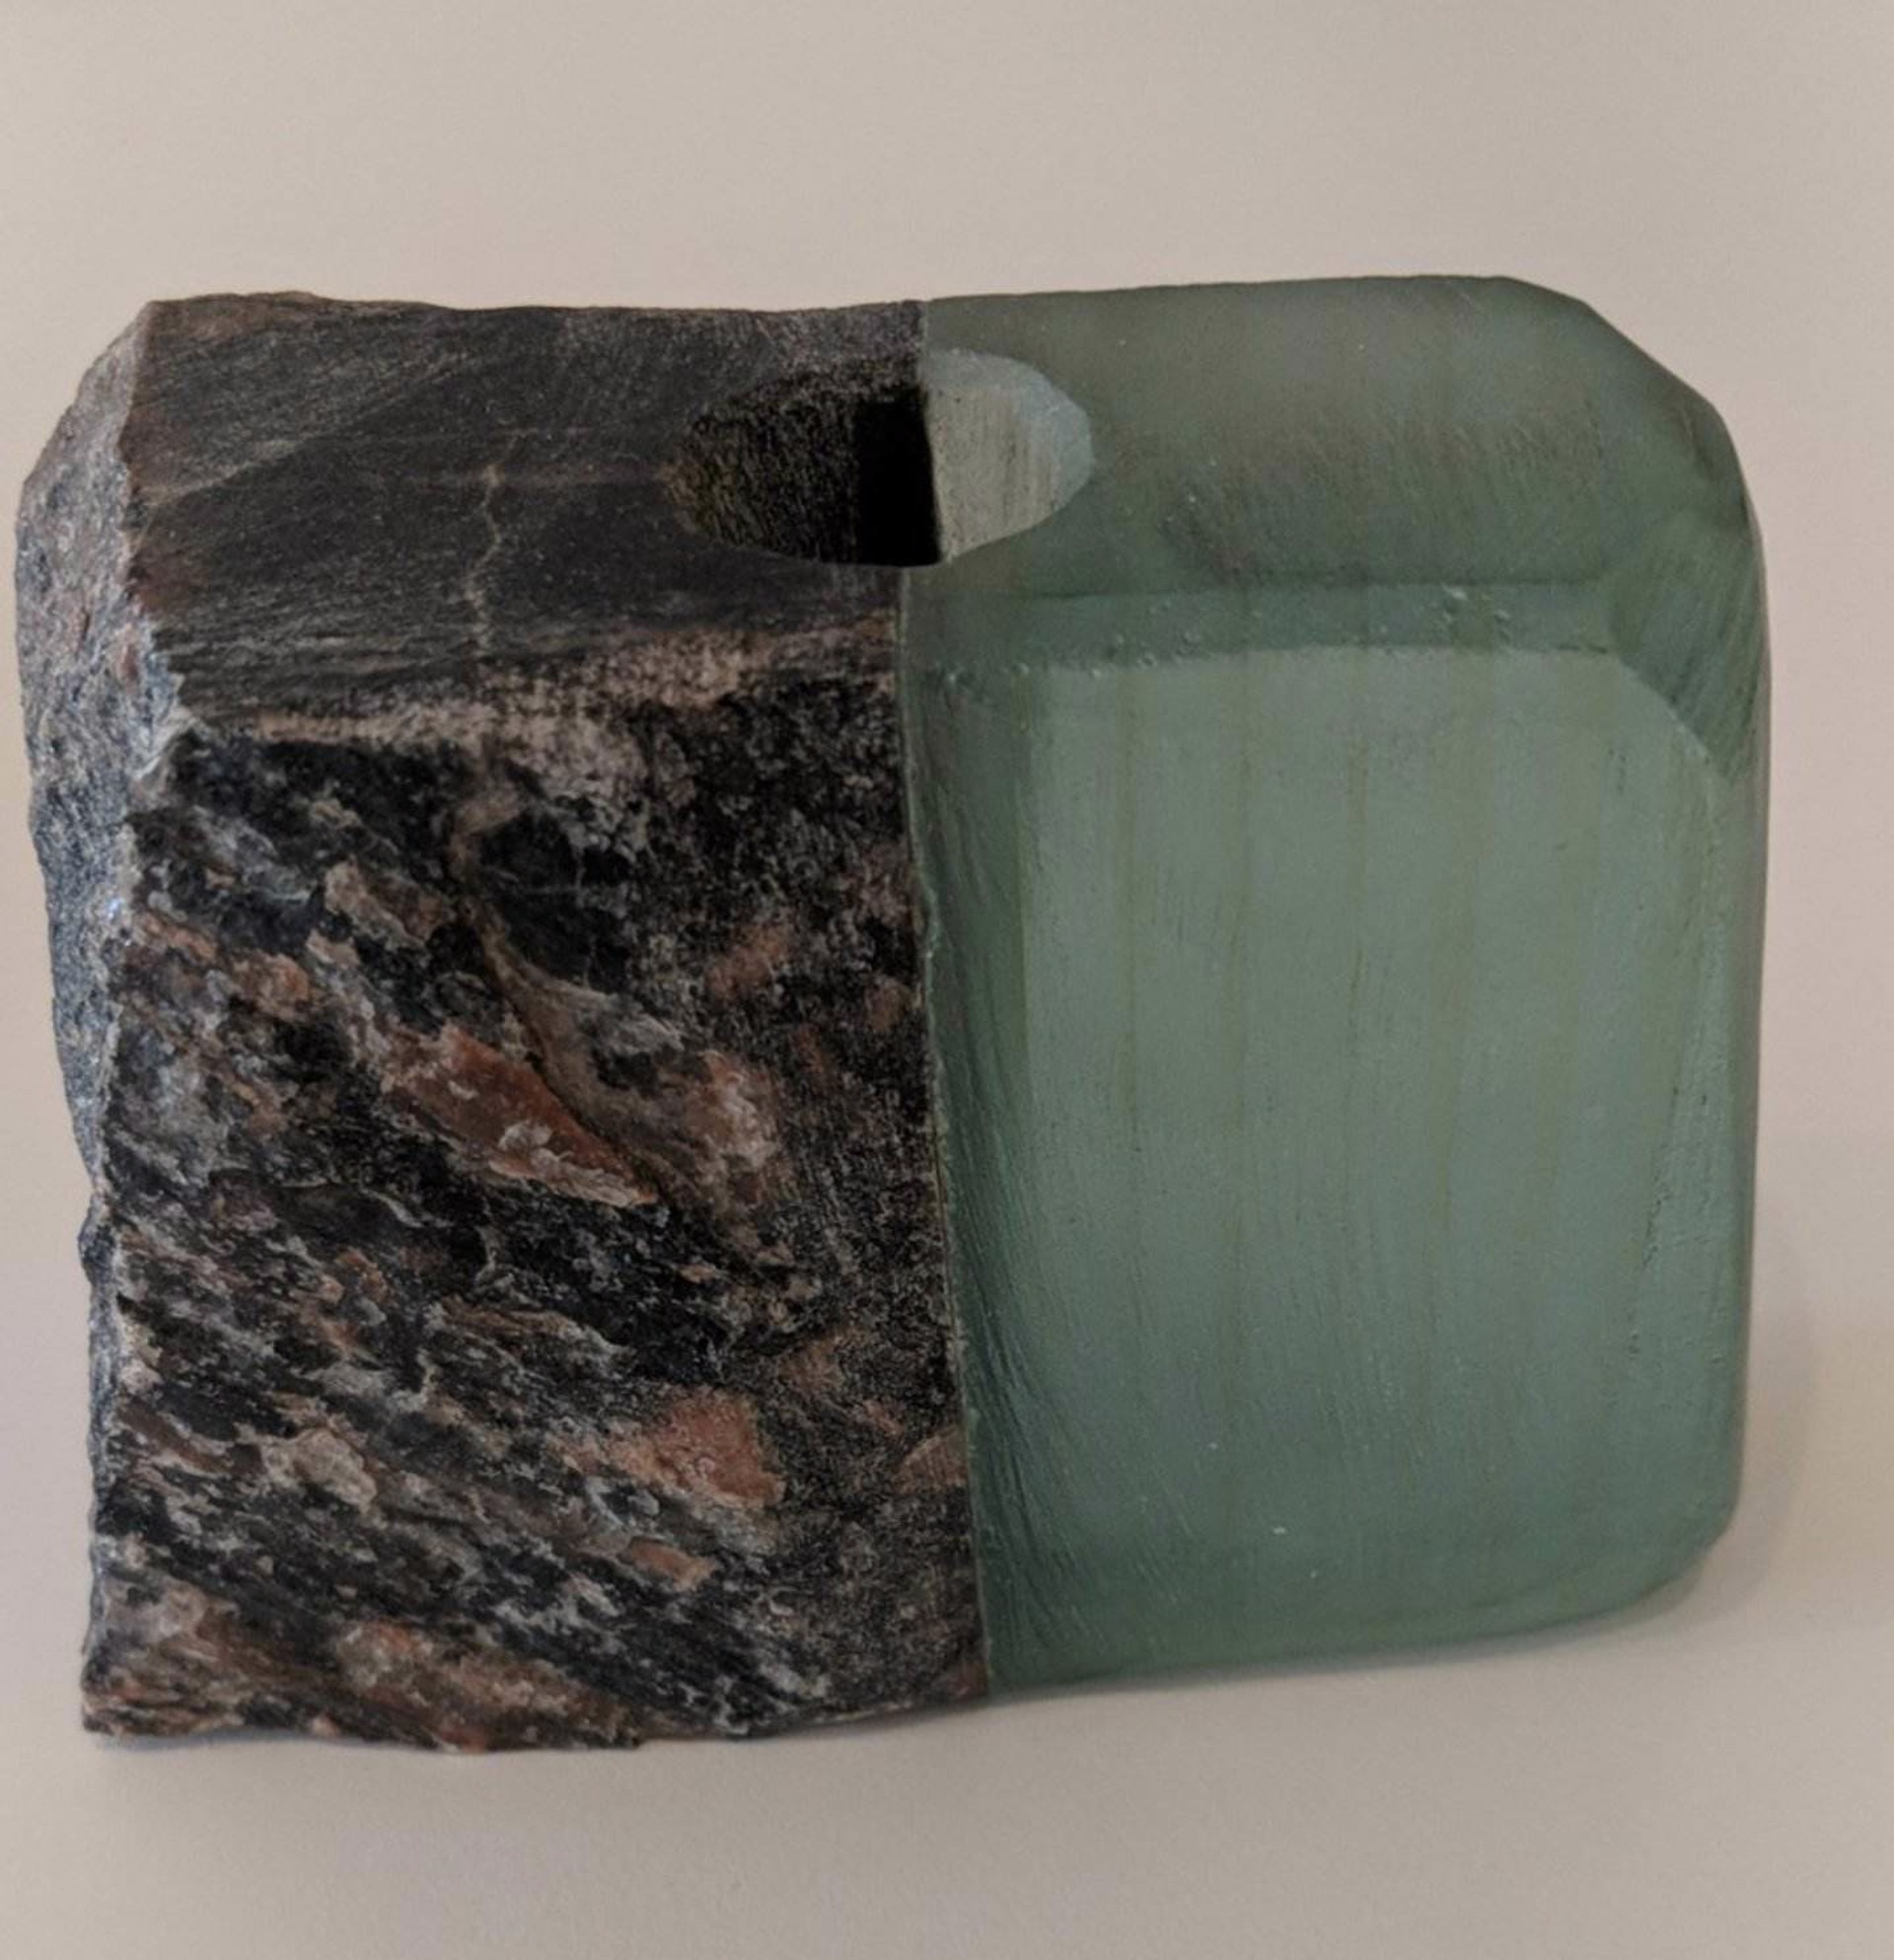 Medium Glass and Stone Vase #7 by Christy Haldane